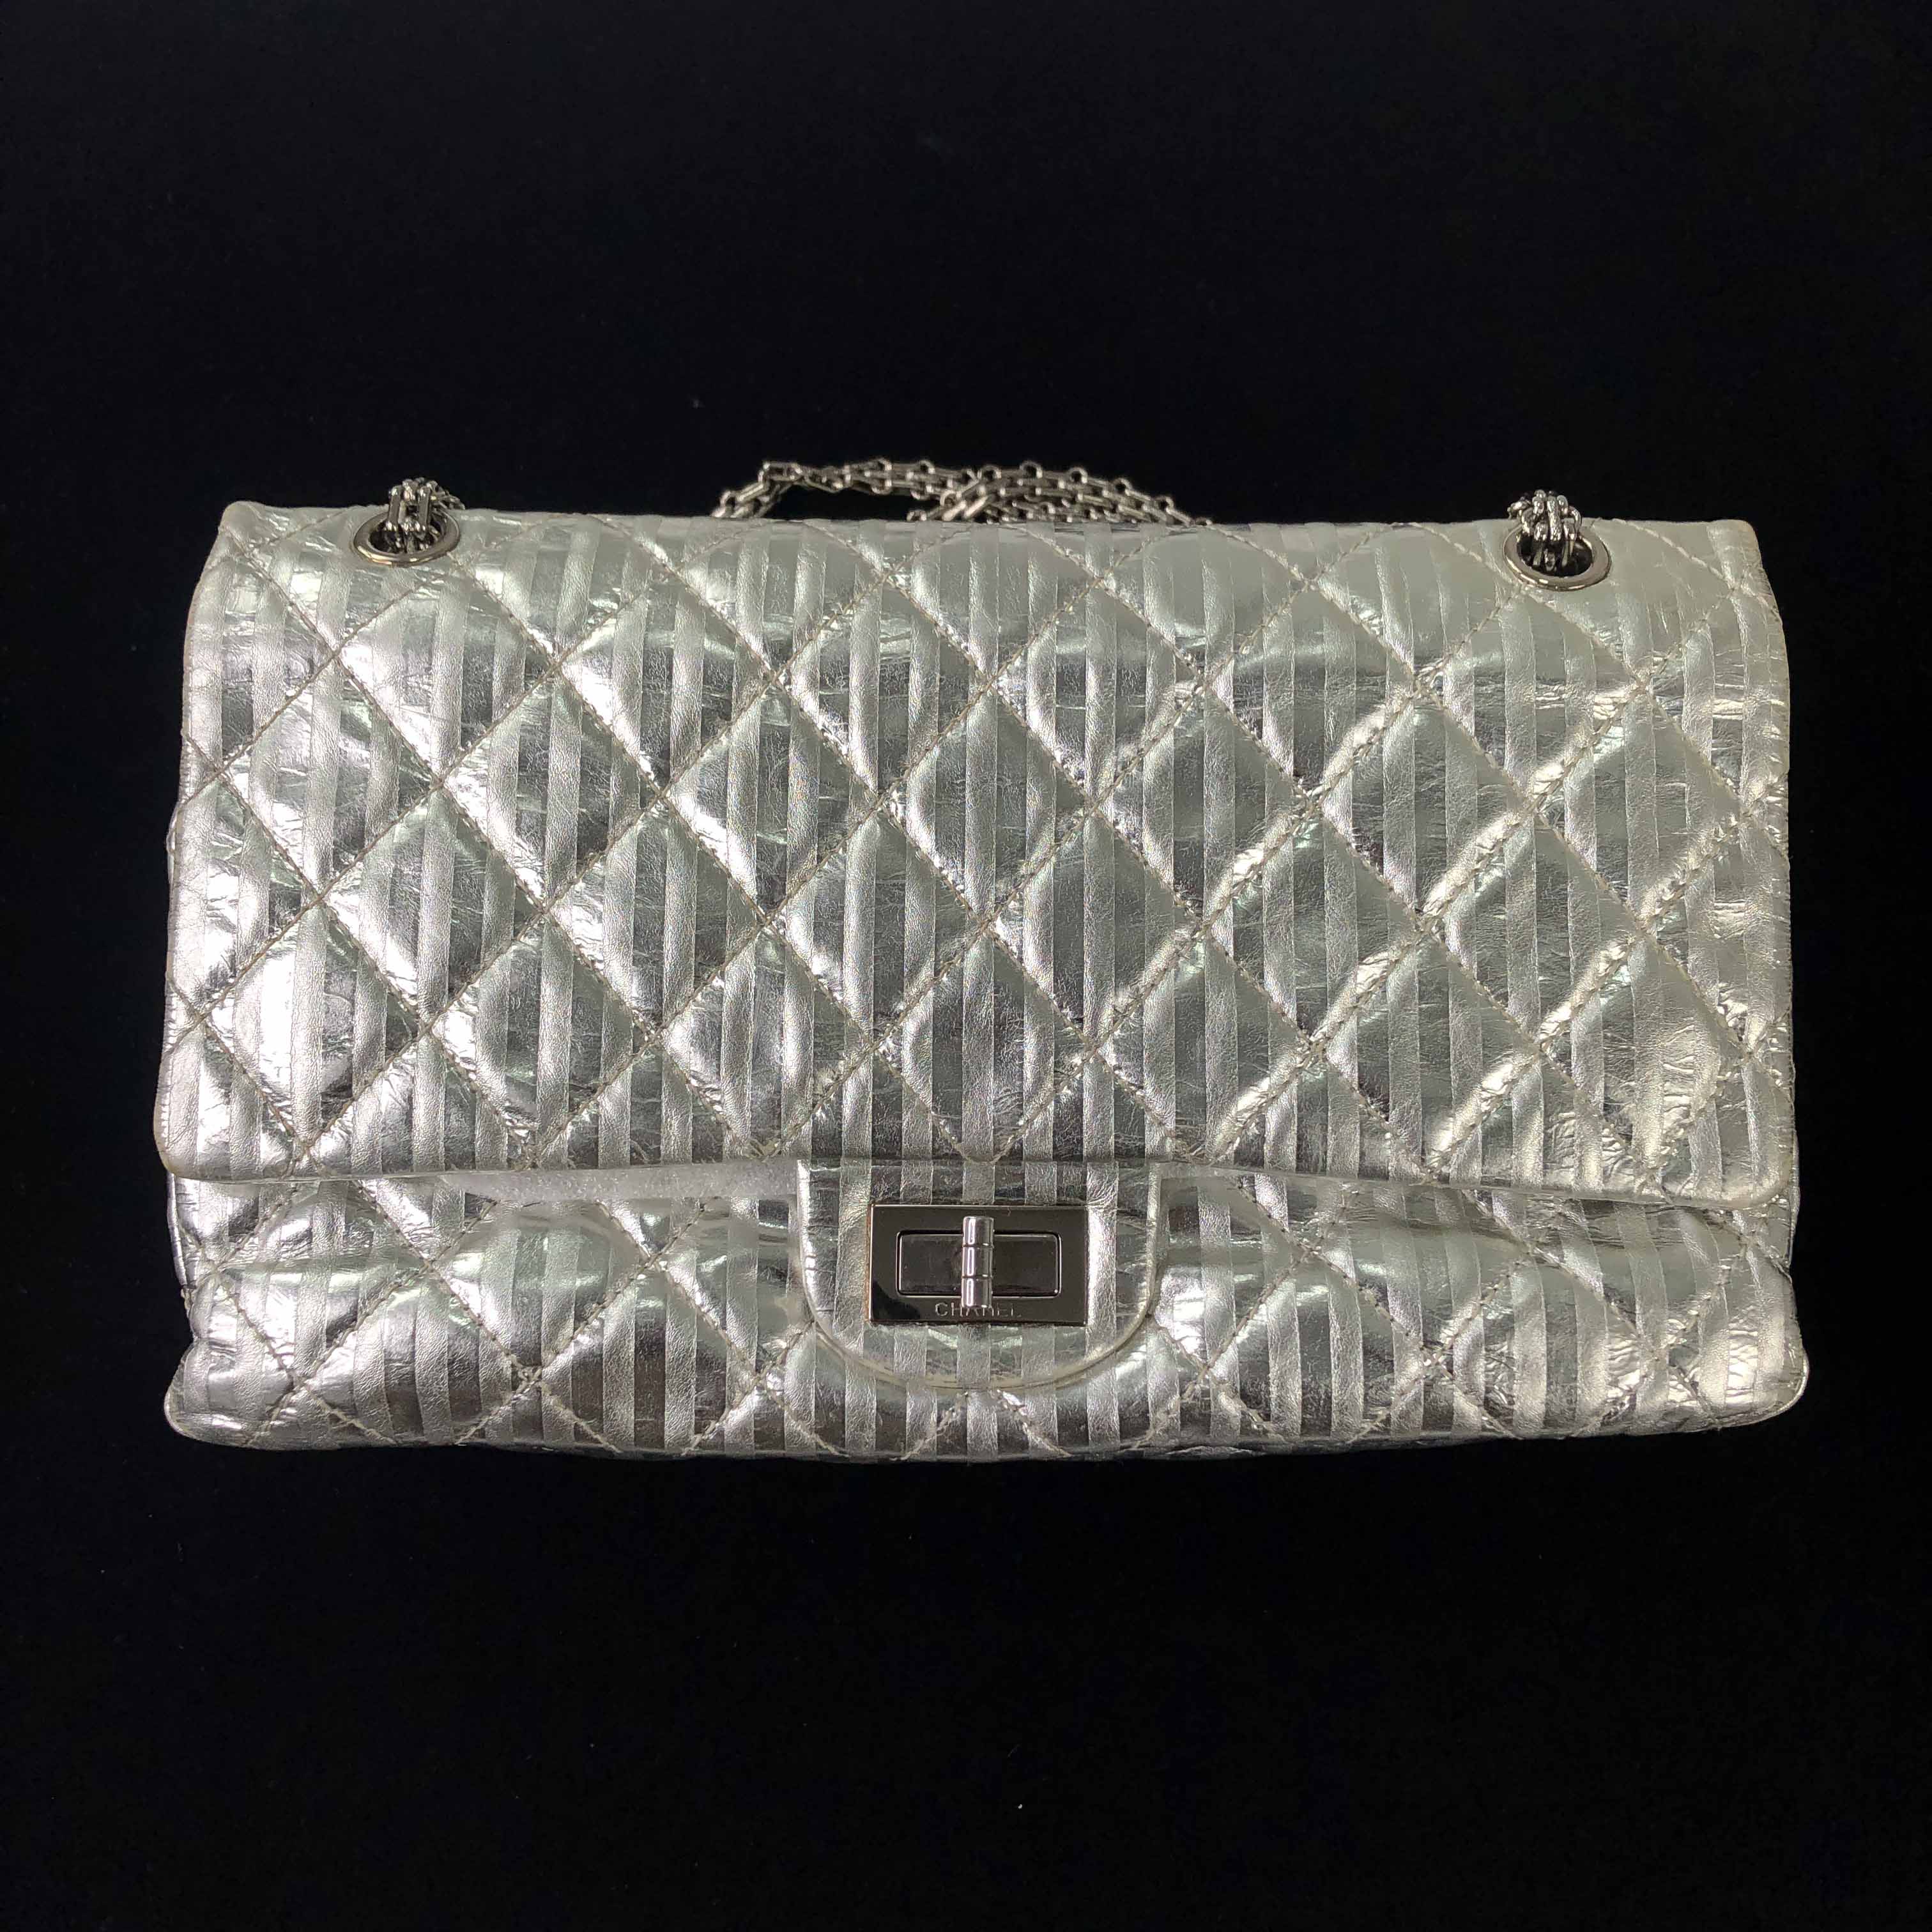 [Chanel] Silver Mirror 225 Flap Bag - Size L